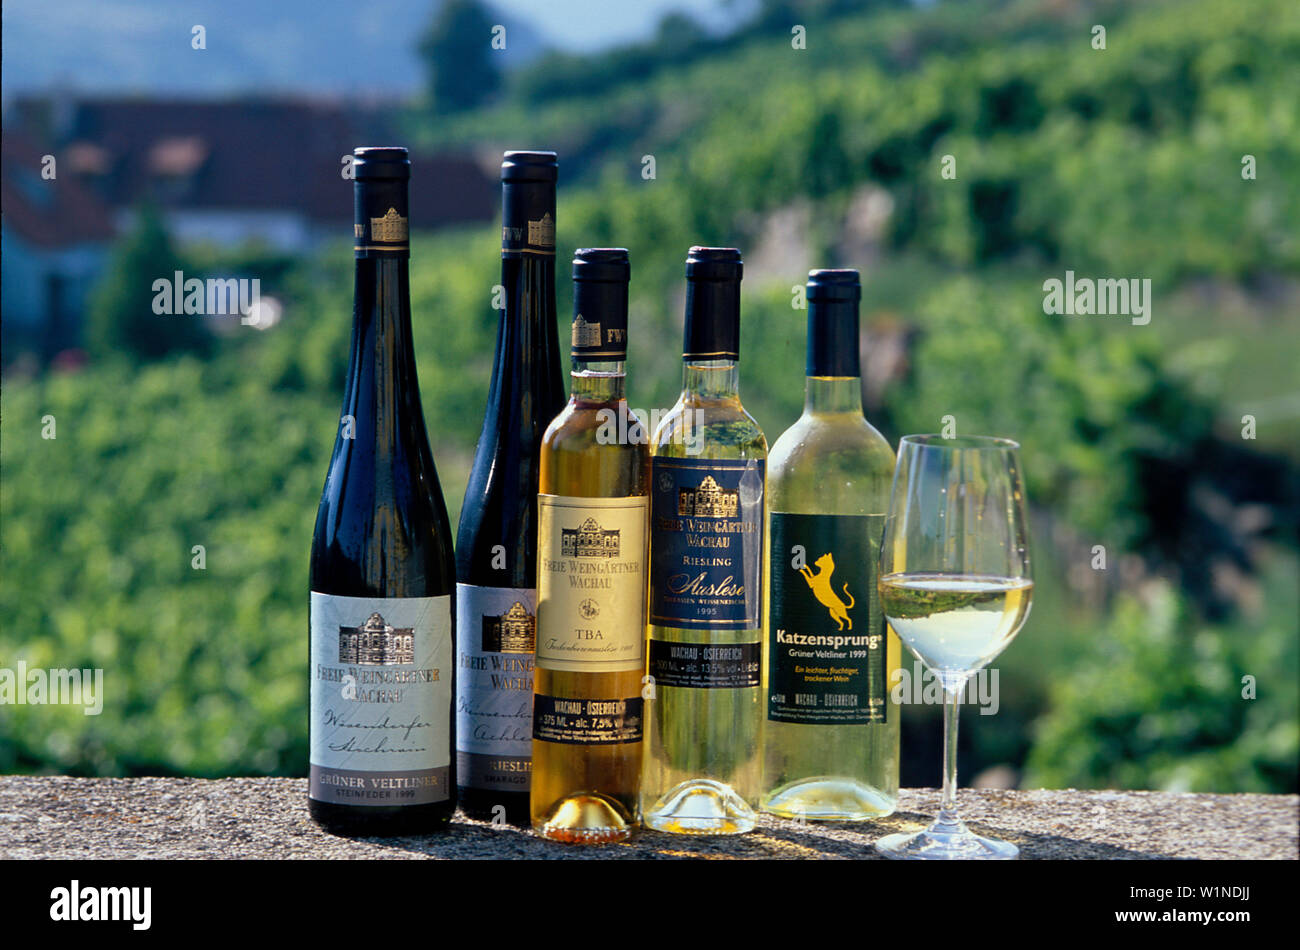 Weinsortiment, Flaschen, Freie Weingaertner Wachau Duernstein, Wachau, Oesterreich Stock Photo